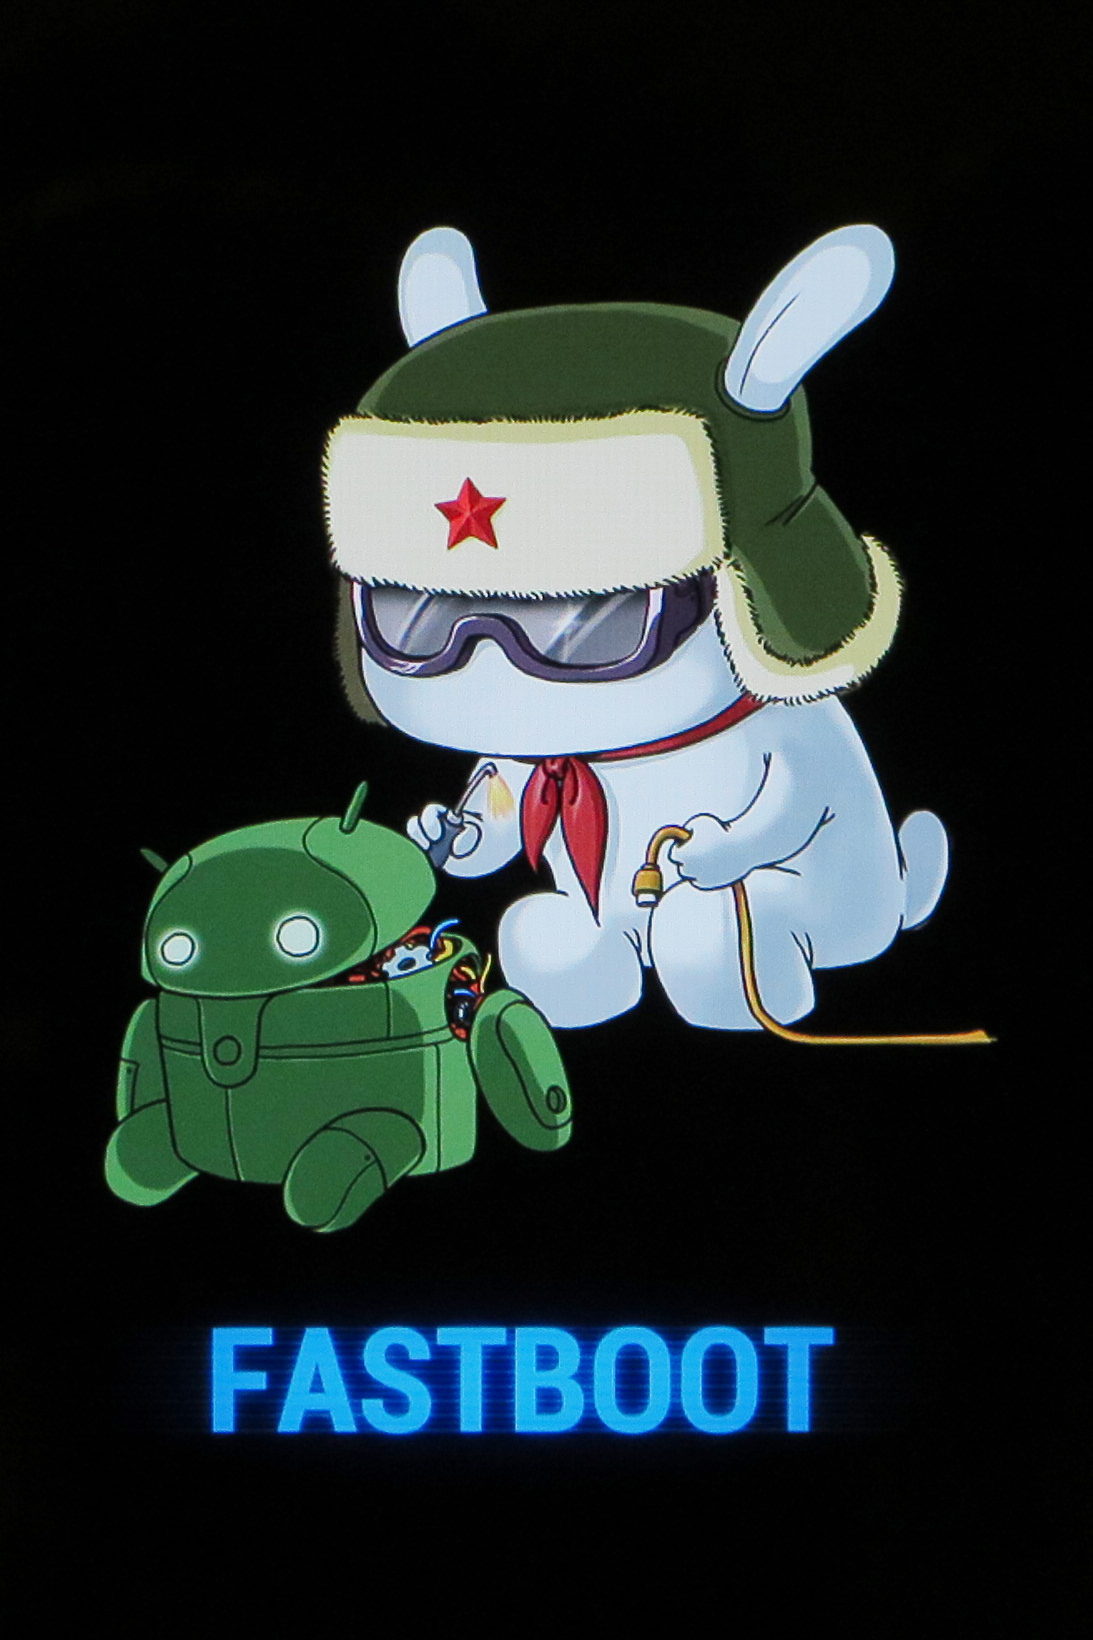 Fastboot redmi что делать. Кролик Xiaomi Fastboot. Заяц андроид Fastboot. Fastboot кролик чинит андроид. Заяц чинит андроид Xiaomi.